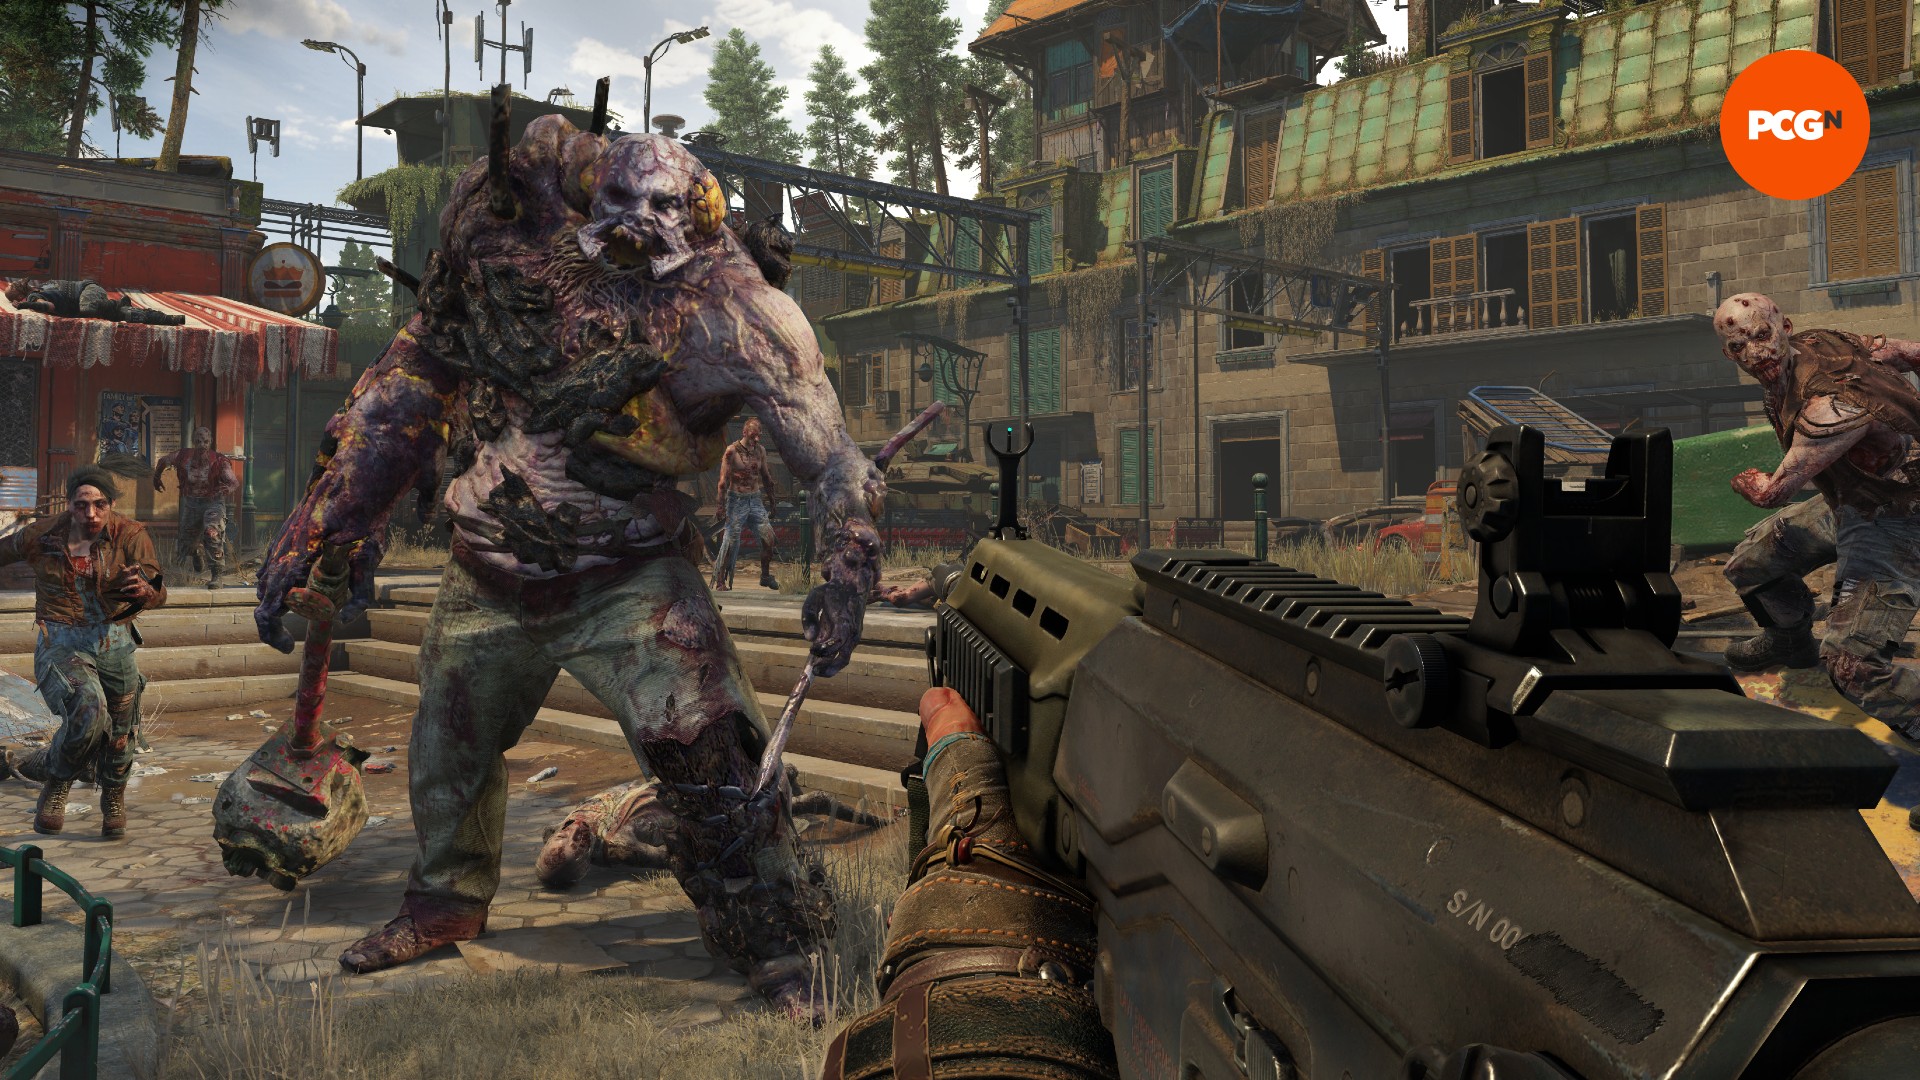 Eine riesige, massige Zombie-Kreatur bewegt sich auf einen Mann zu, der eine Waffe hält, flankiert von kleineren Zombies